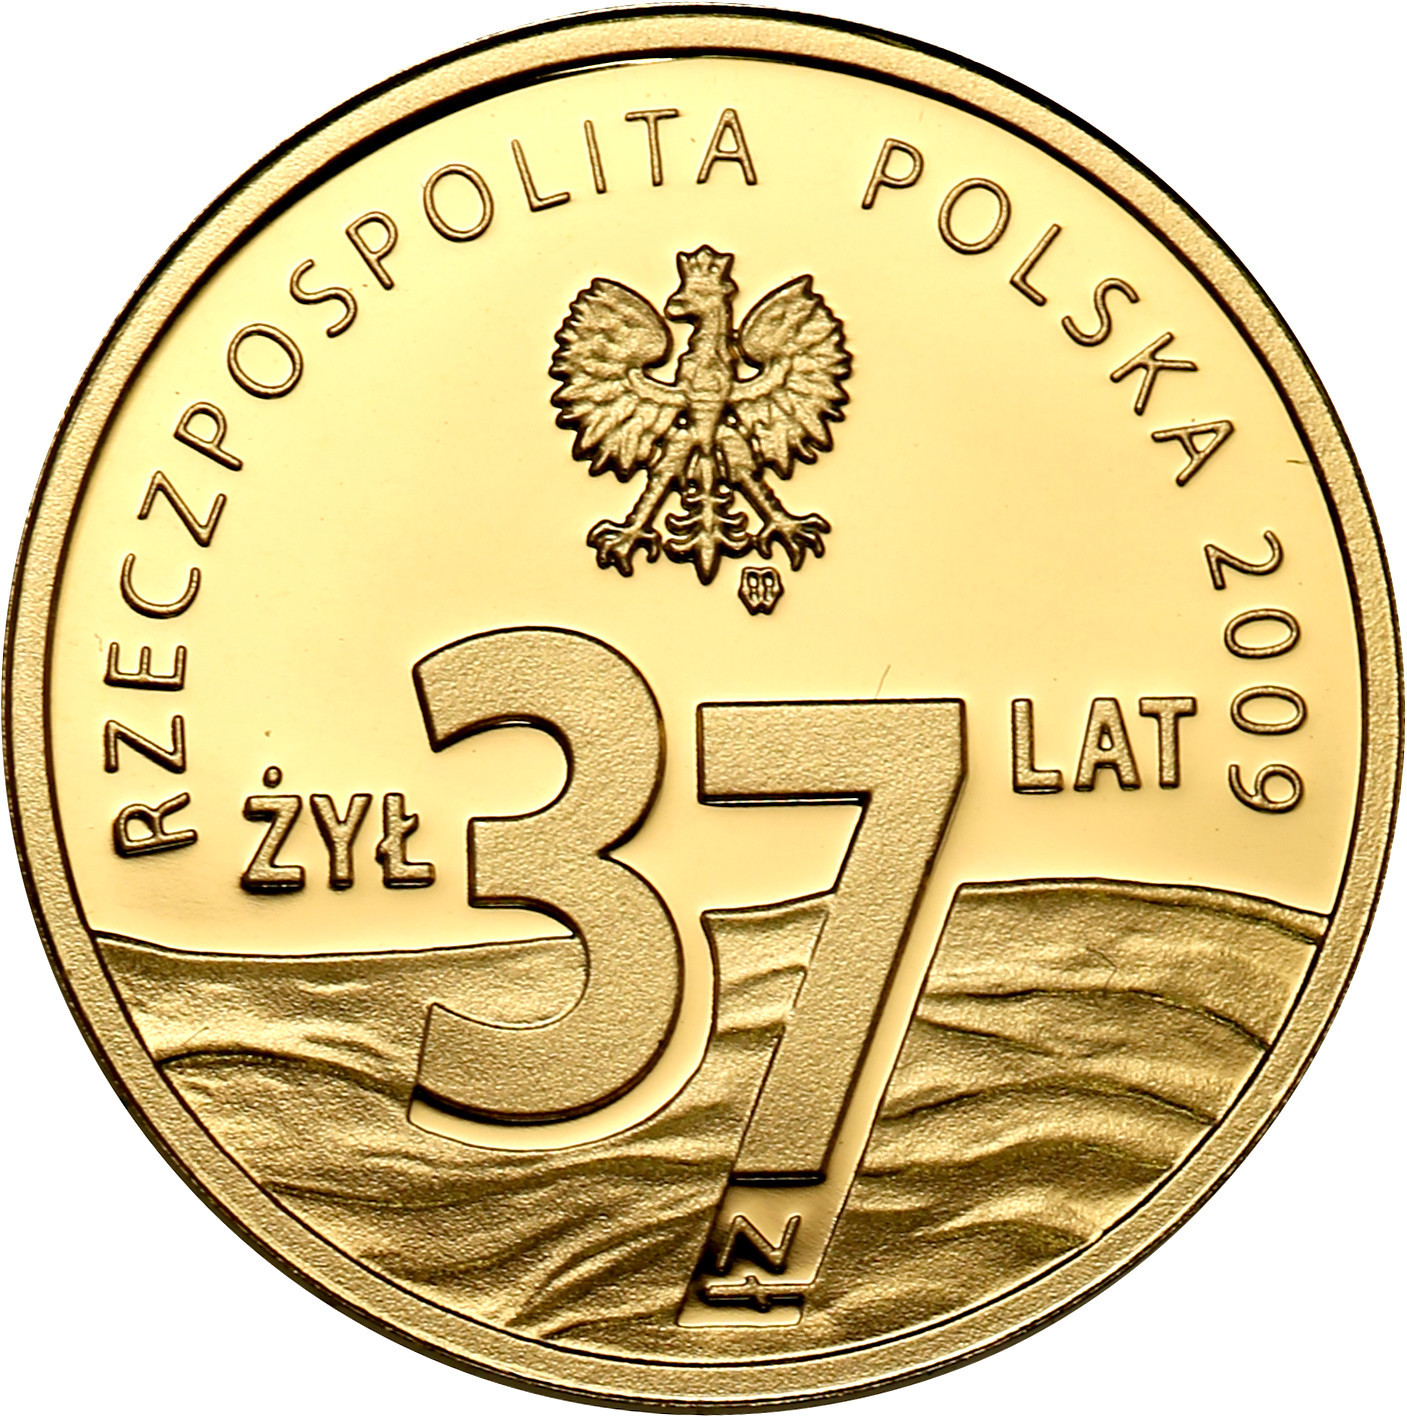 Polska III RP 37 złotych 2009 Popiełuszko st.L